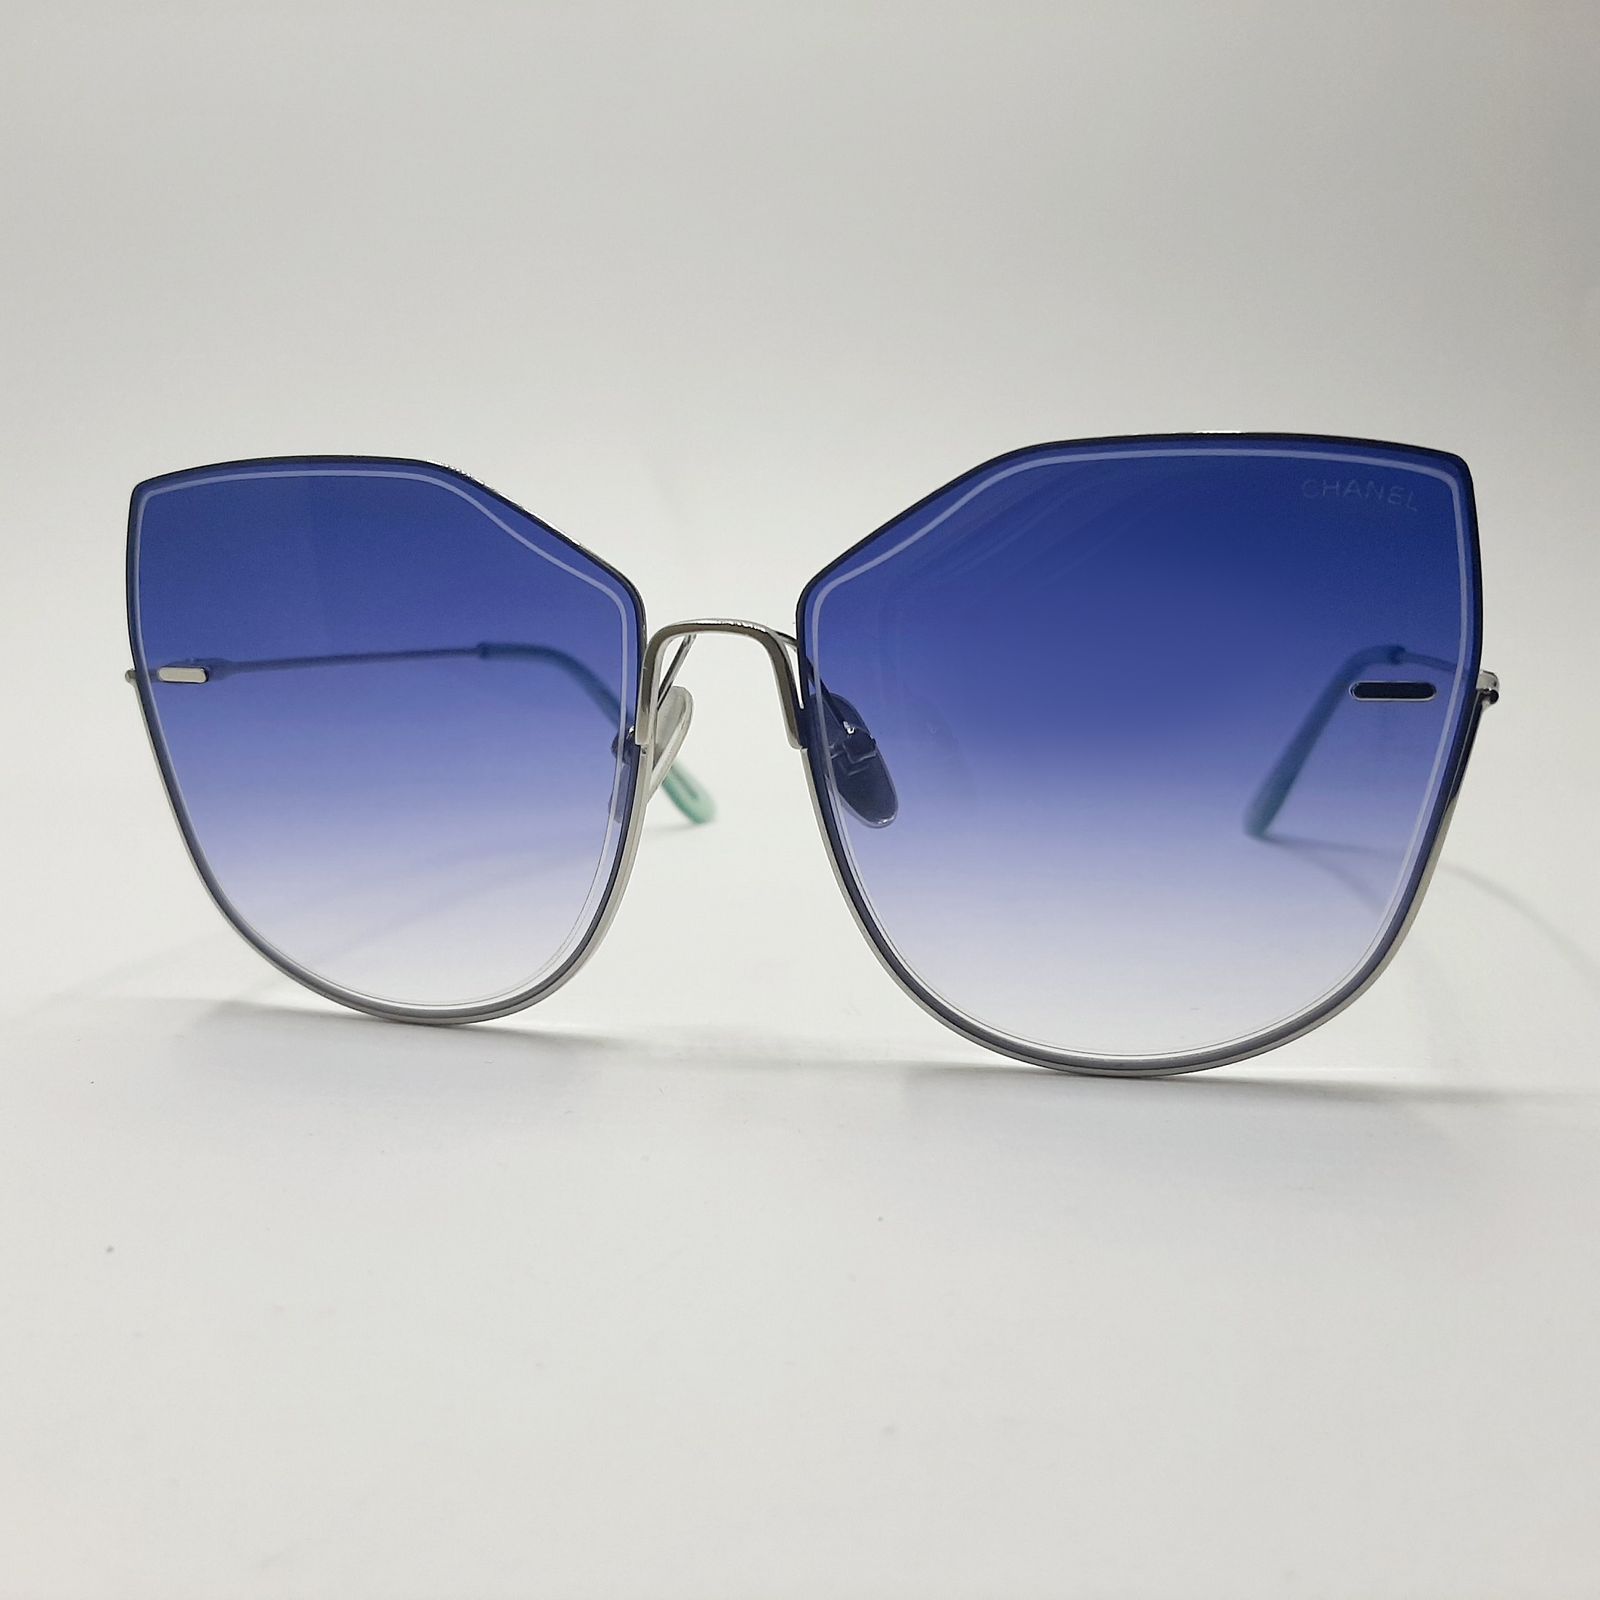 عینک آفتابی مدل S31030c21 -  - 2